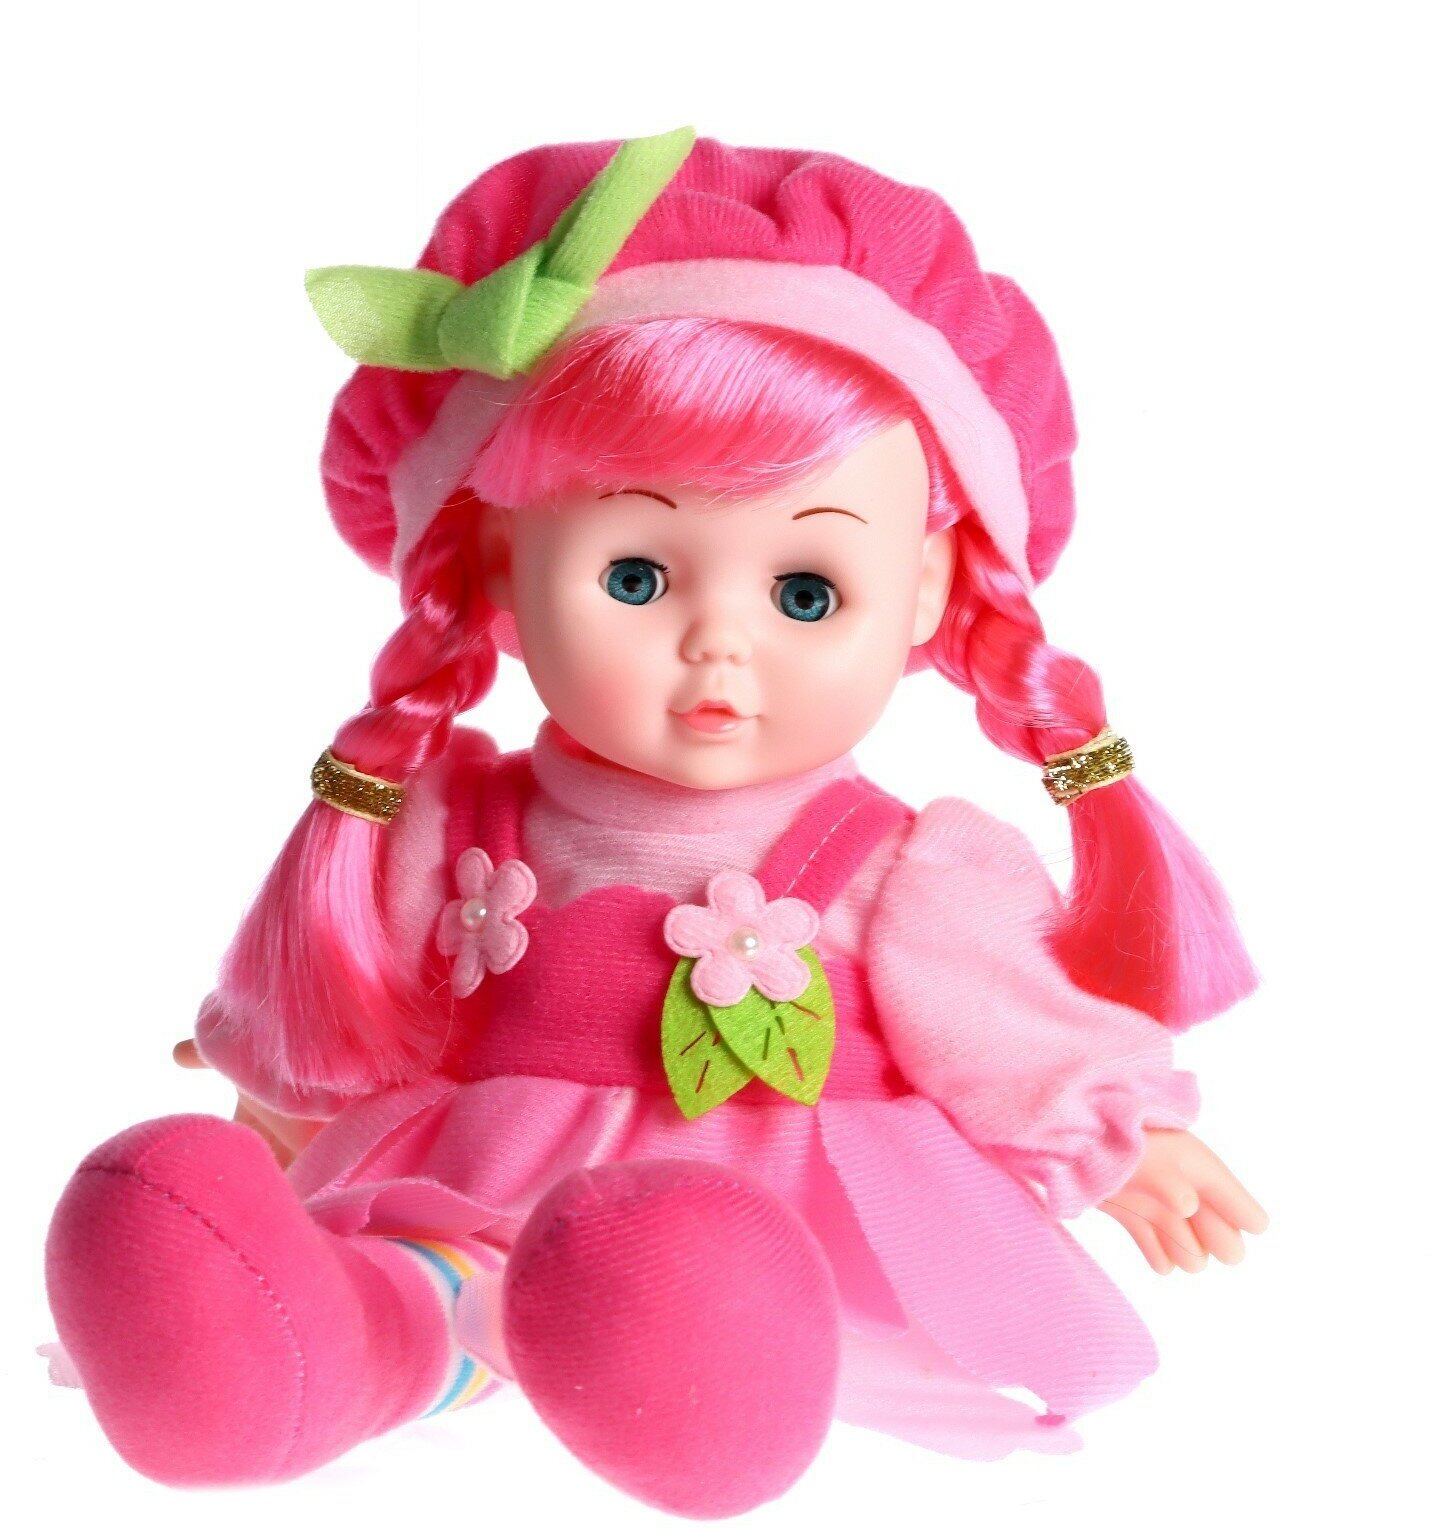 Кукла мягконабивная «Малышка Мэри» 31 см, со звуком, в платье